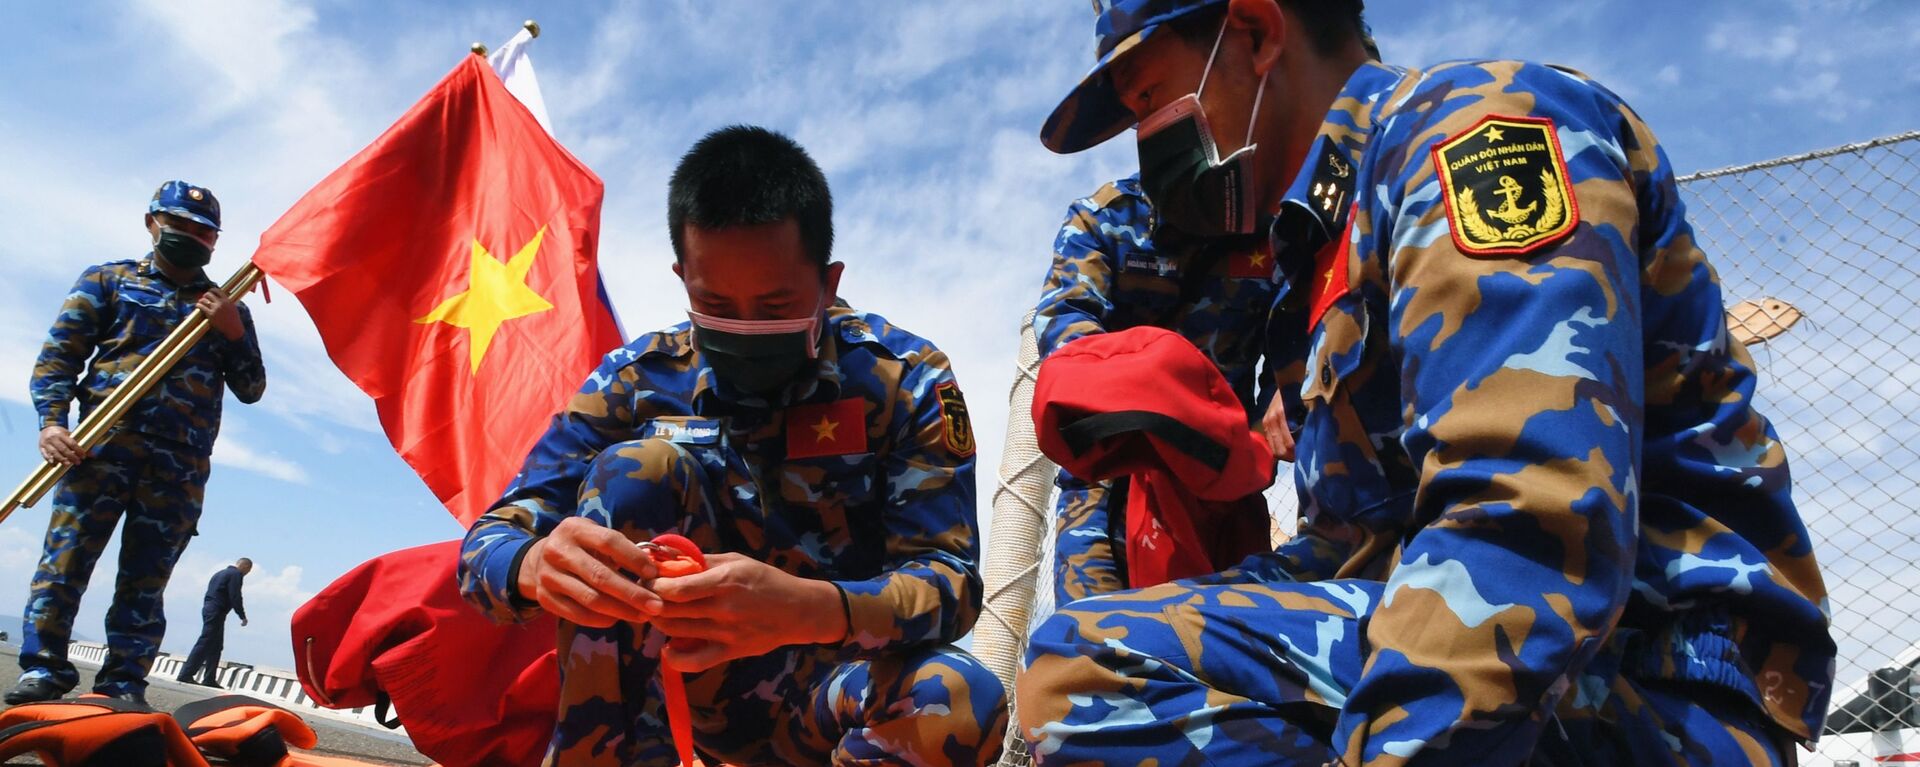 Quân nhân Việt Nam trước khi bắt đầu thi đấu về sử dụng thiết bị cứu sinh trong chặng 3 cuộc thi Cúp Biển tại Vladivostok trong khuôn khổ Hội thao Quân đội Quốc tế lần thứ VII Army Games-2021 - Sputnik Việt Nam, 1920, 31.08.2021